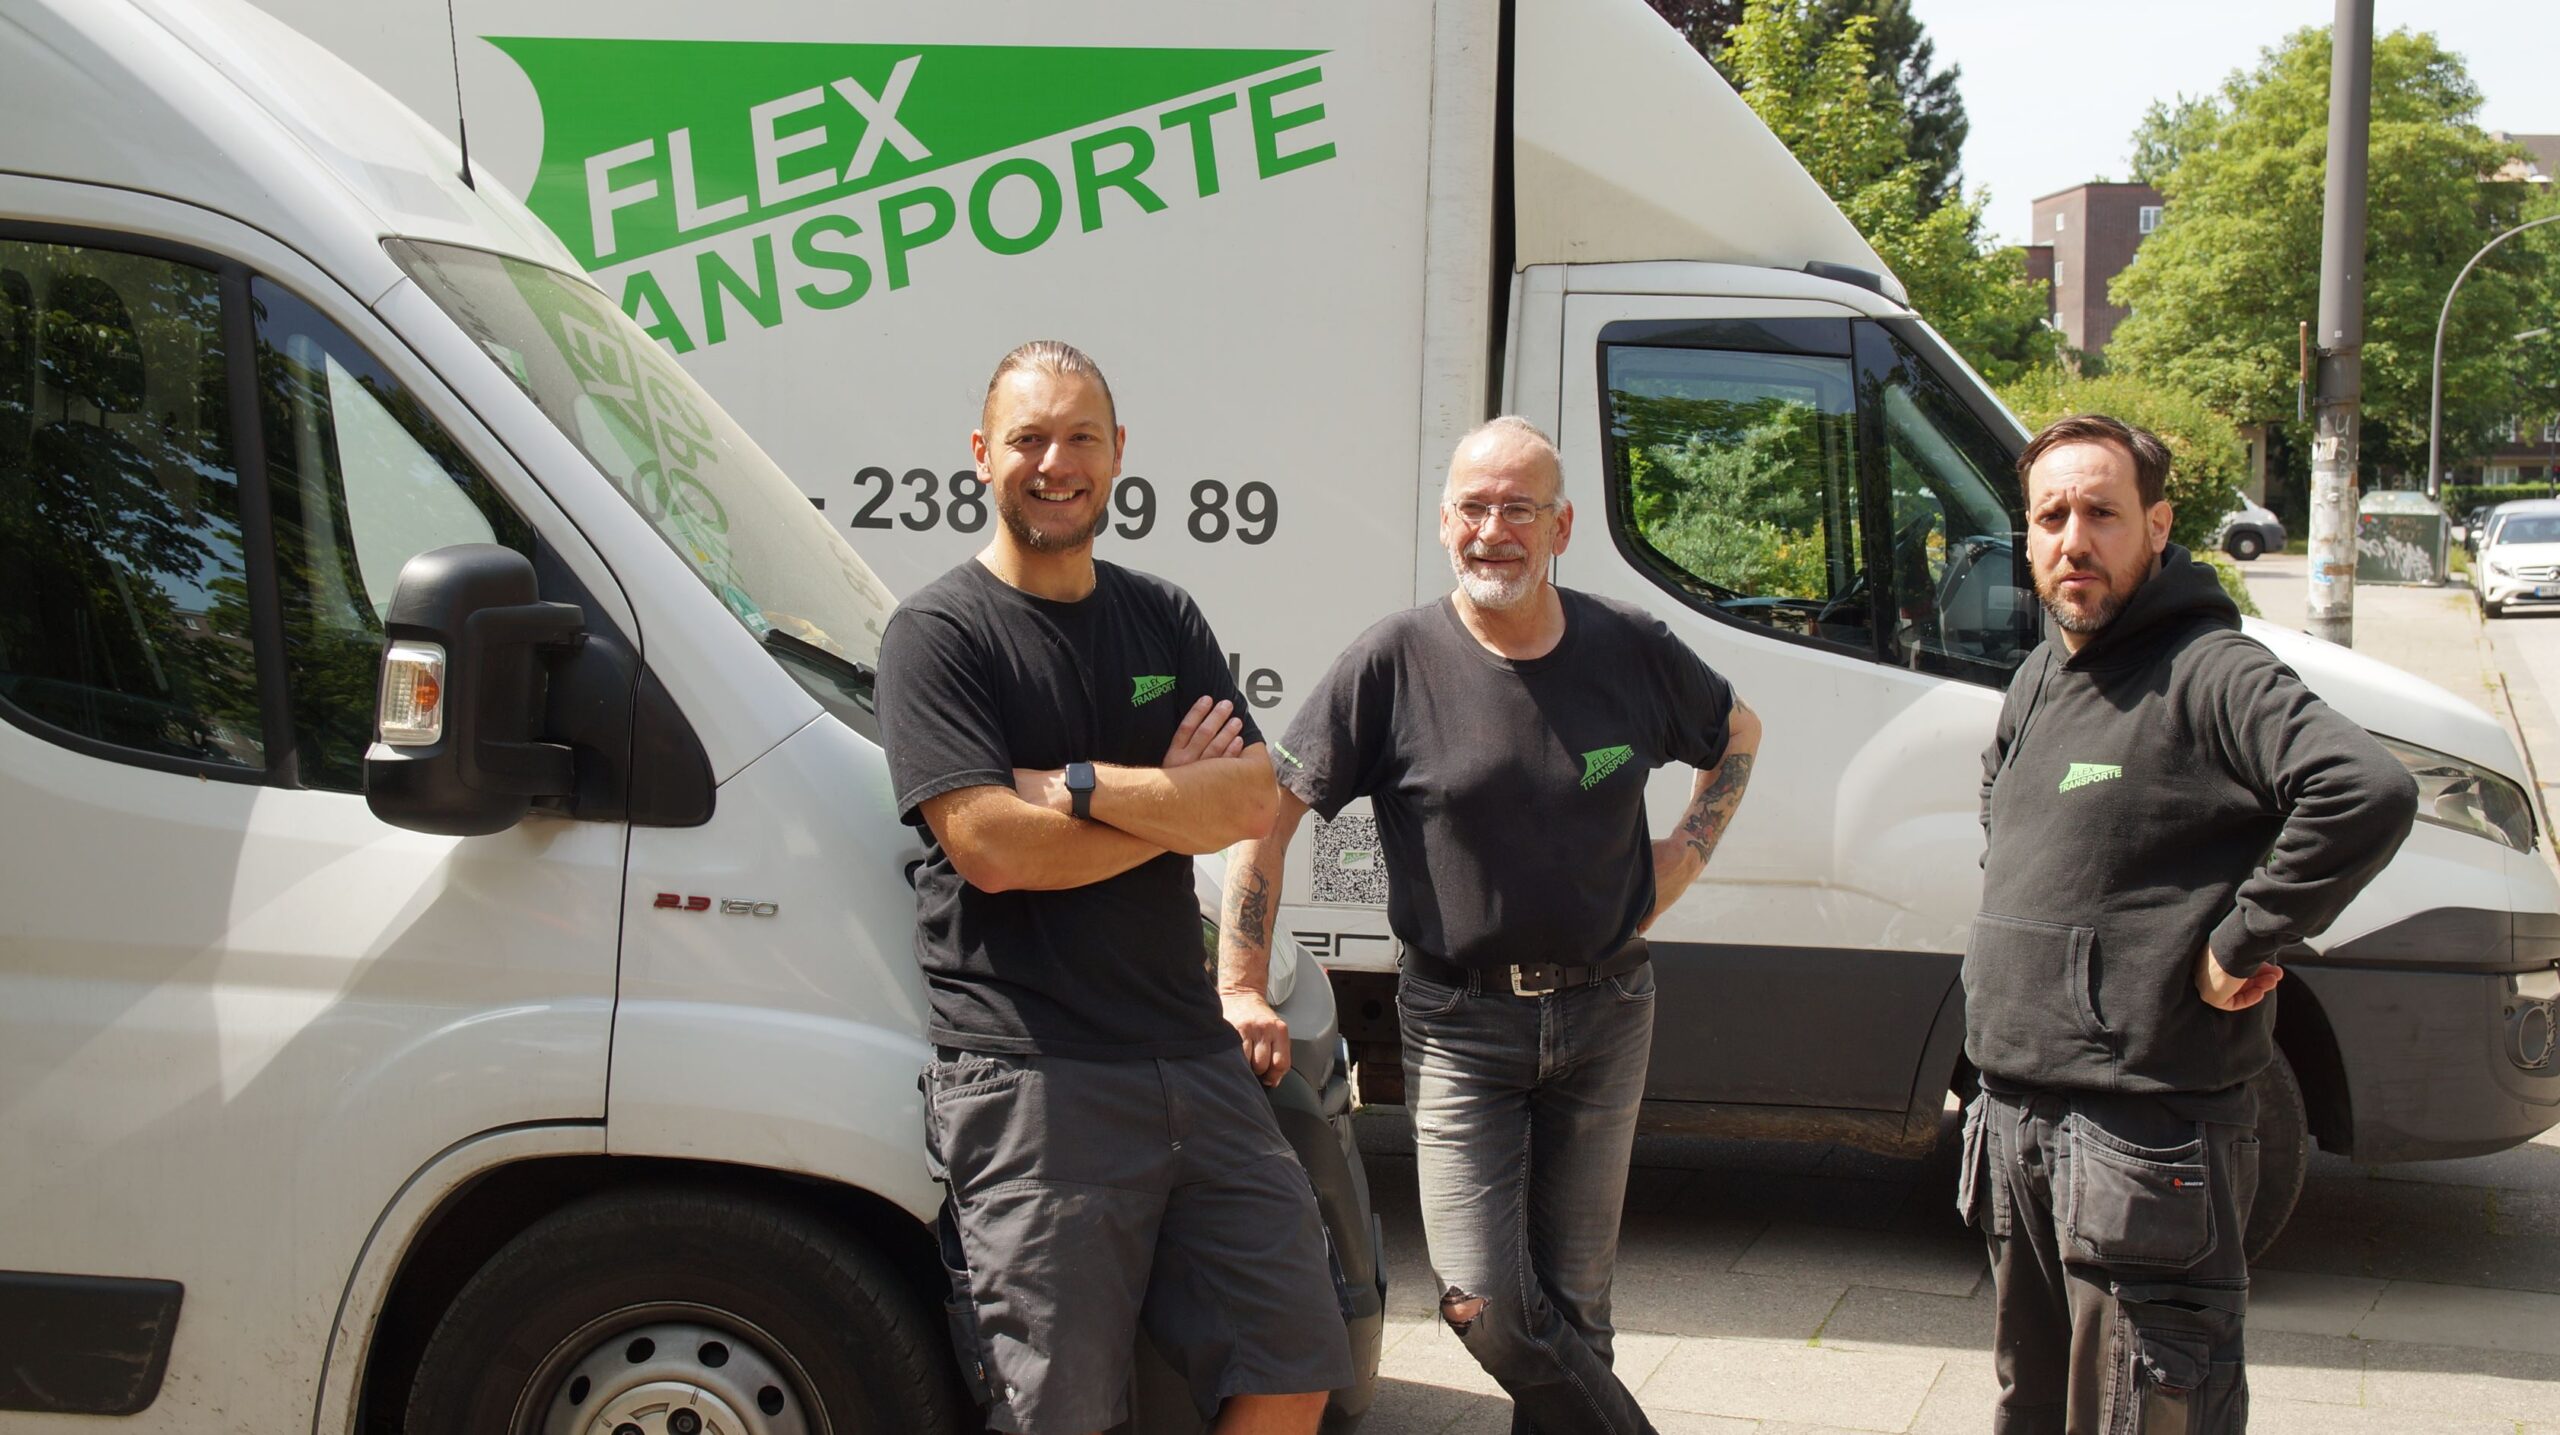 Unser Flex Transporte Team vor dem Umzugswagen